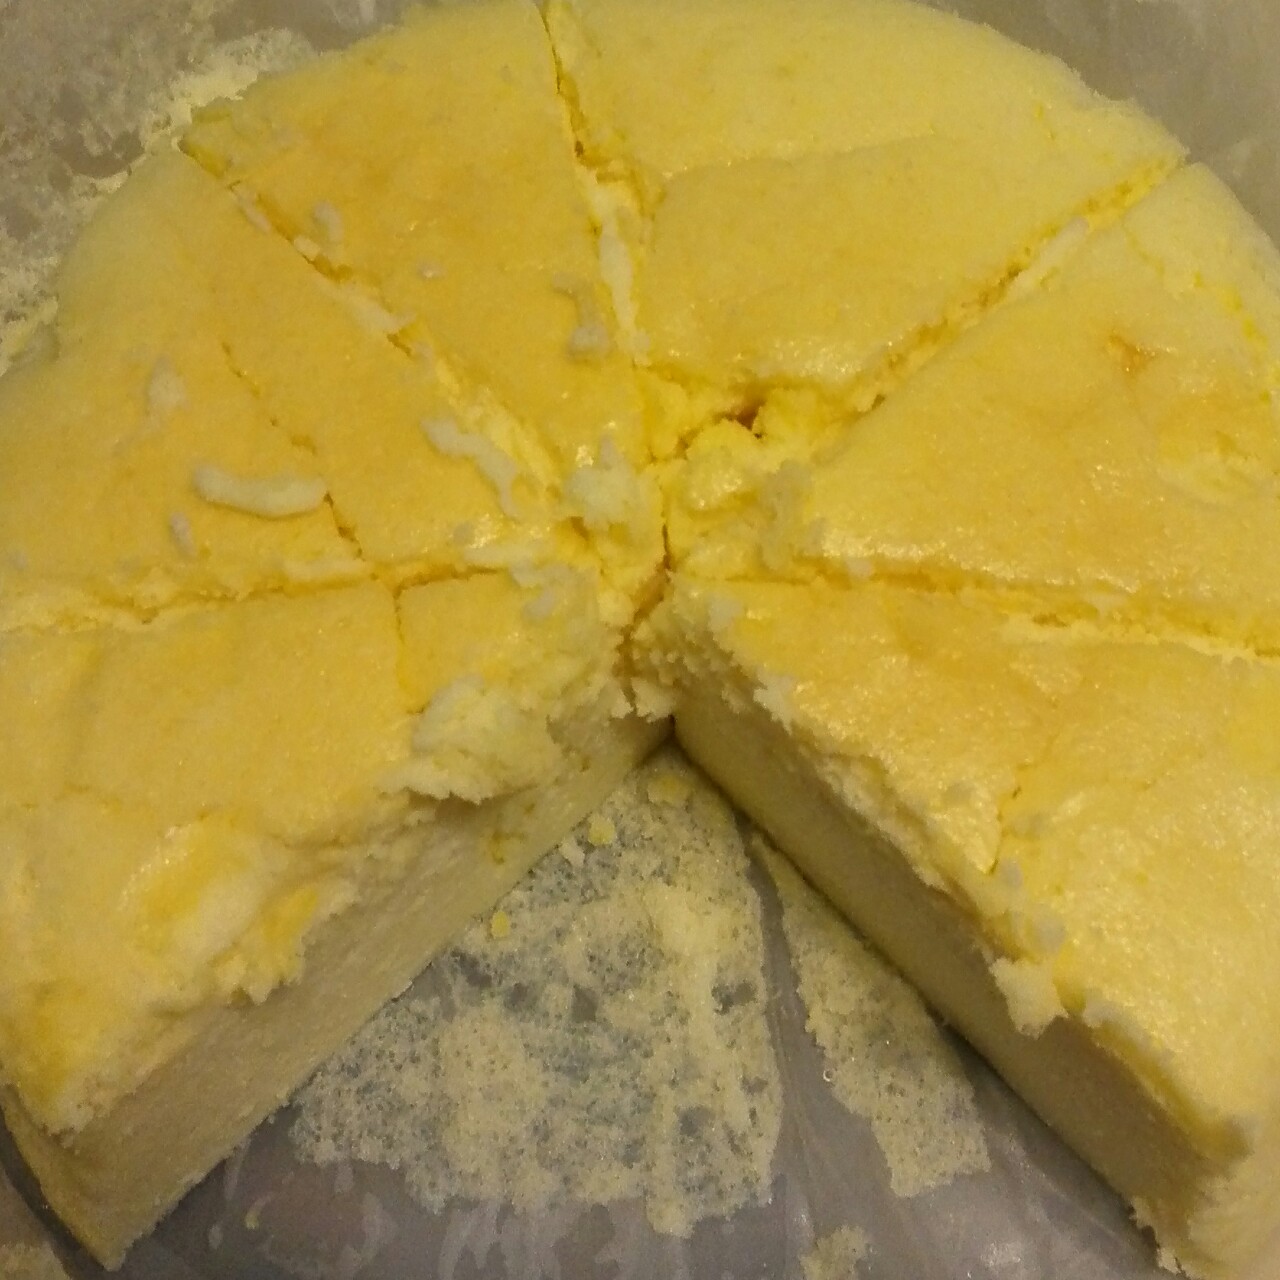 轻乳酪芝士蛋糕6寸#皮黑森林#